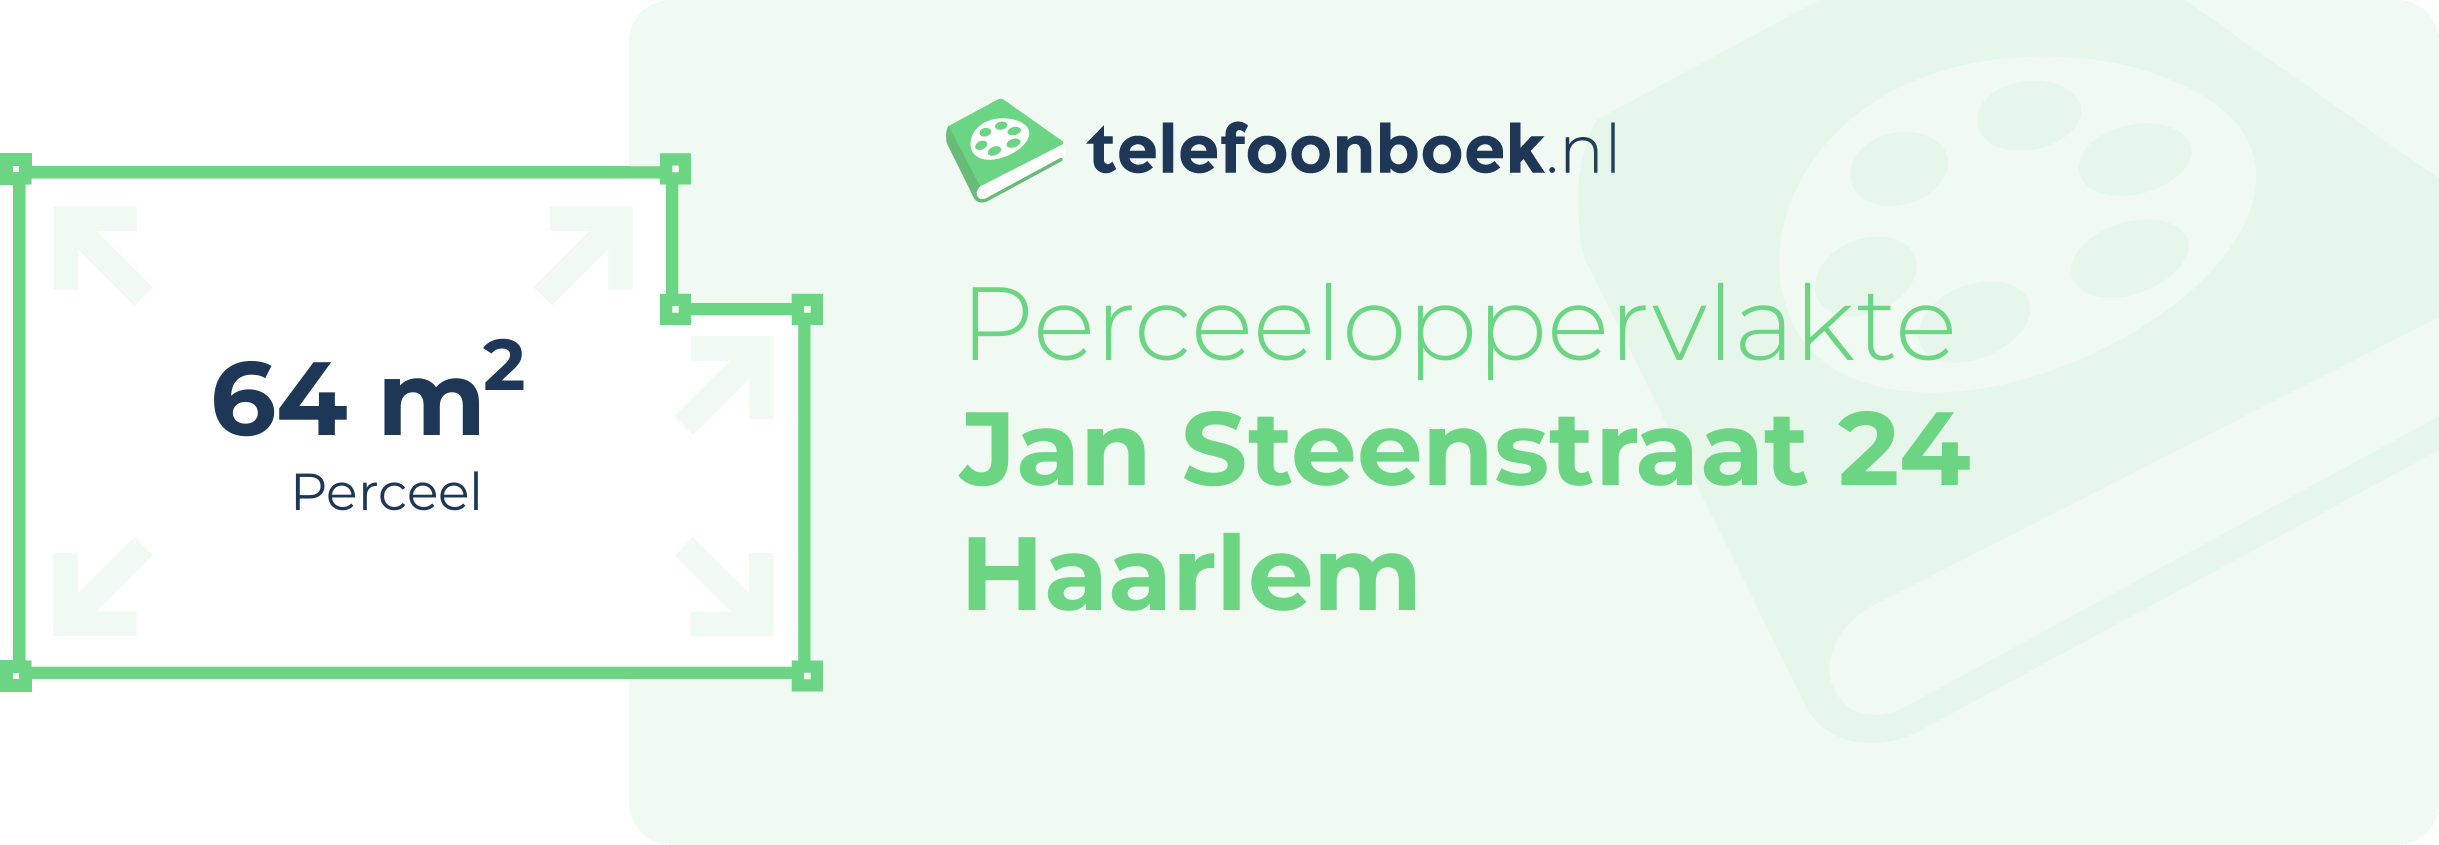 Perceeloppervlakte Jan Steenstraat 24 Haarlem